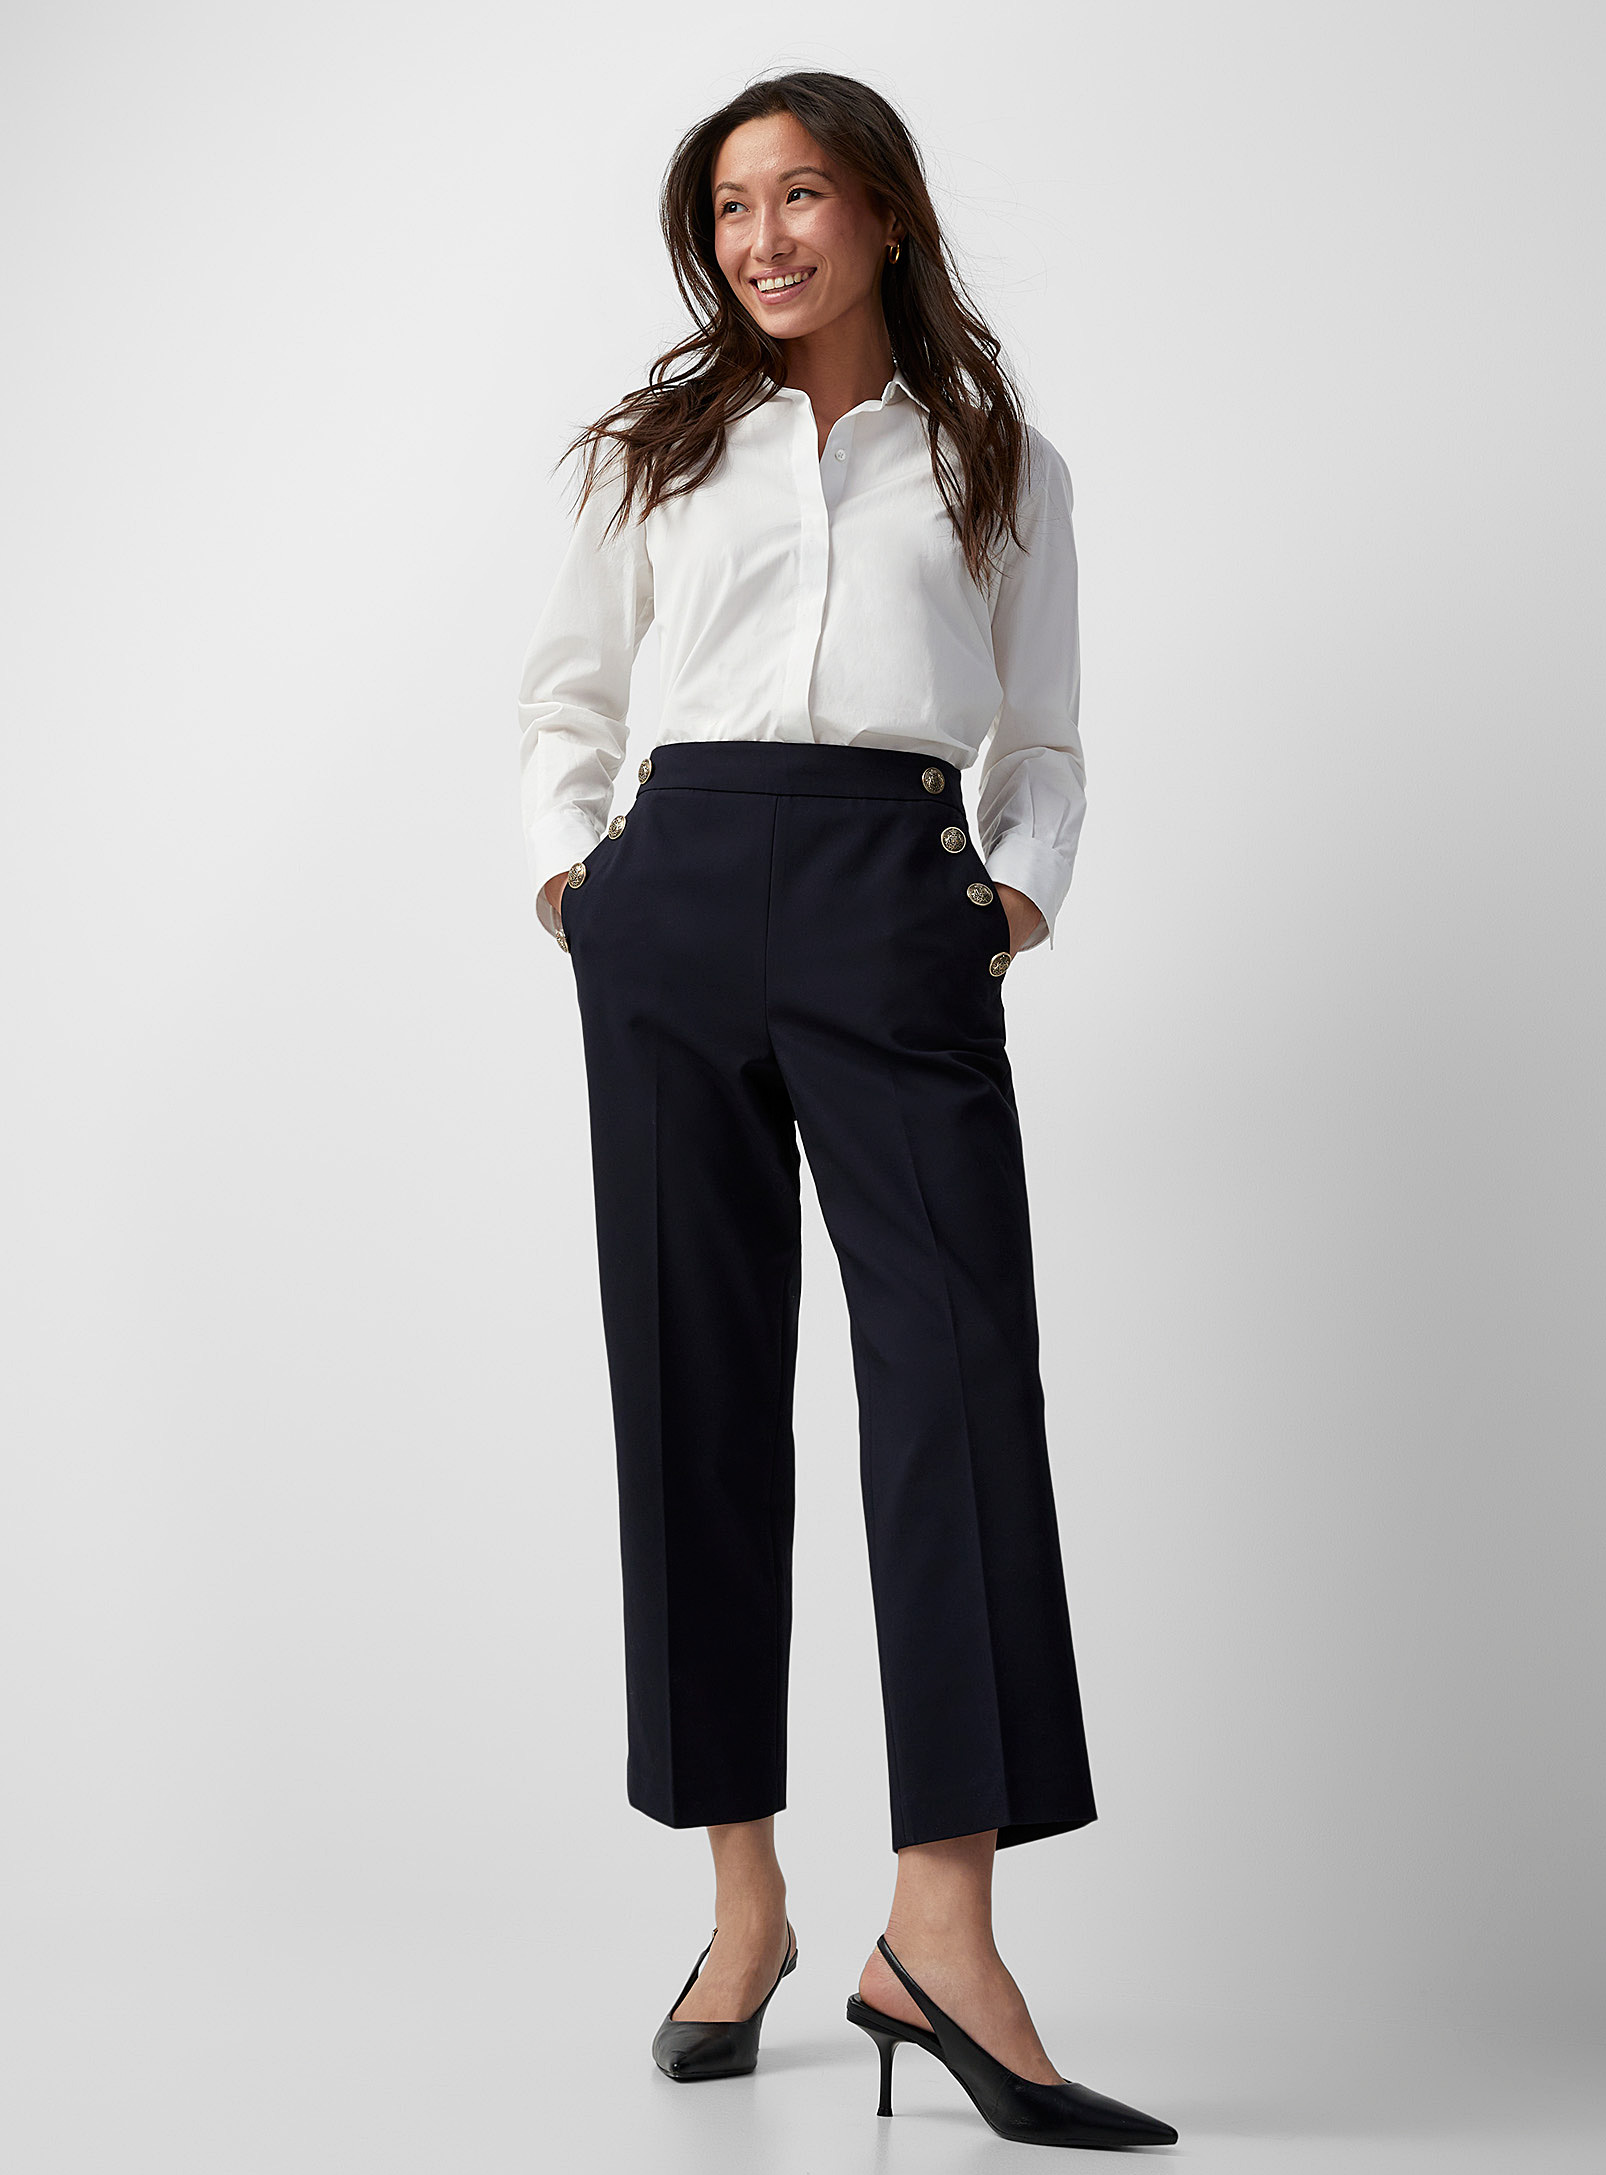 Contemporaine - Women's Crest buttons structured pant